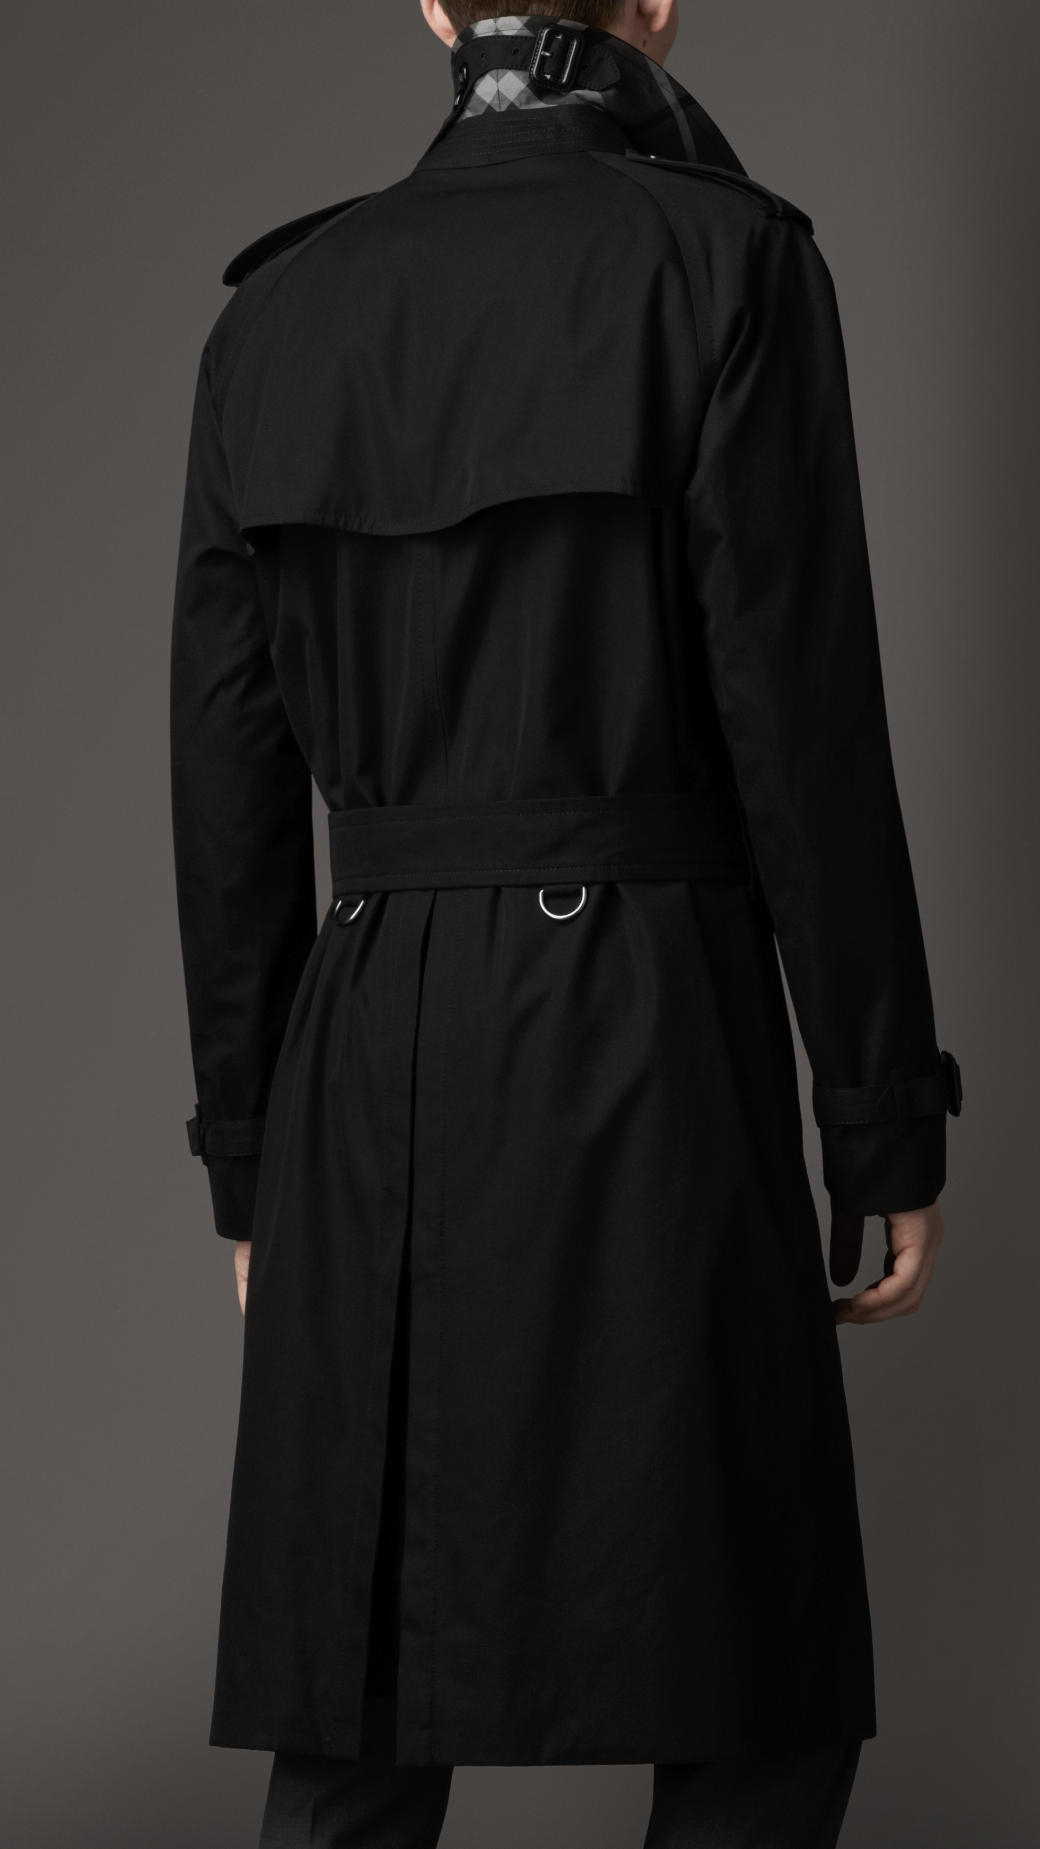 Burberry Long Cotton Gabardine Trench Coat in Black for Men - Lyst